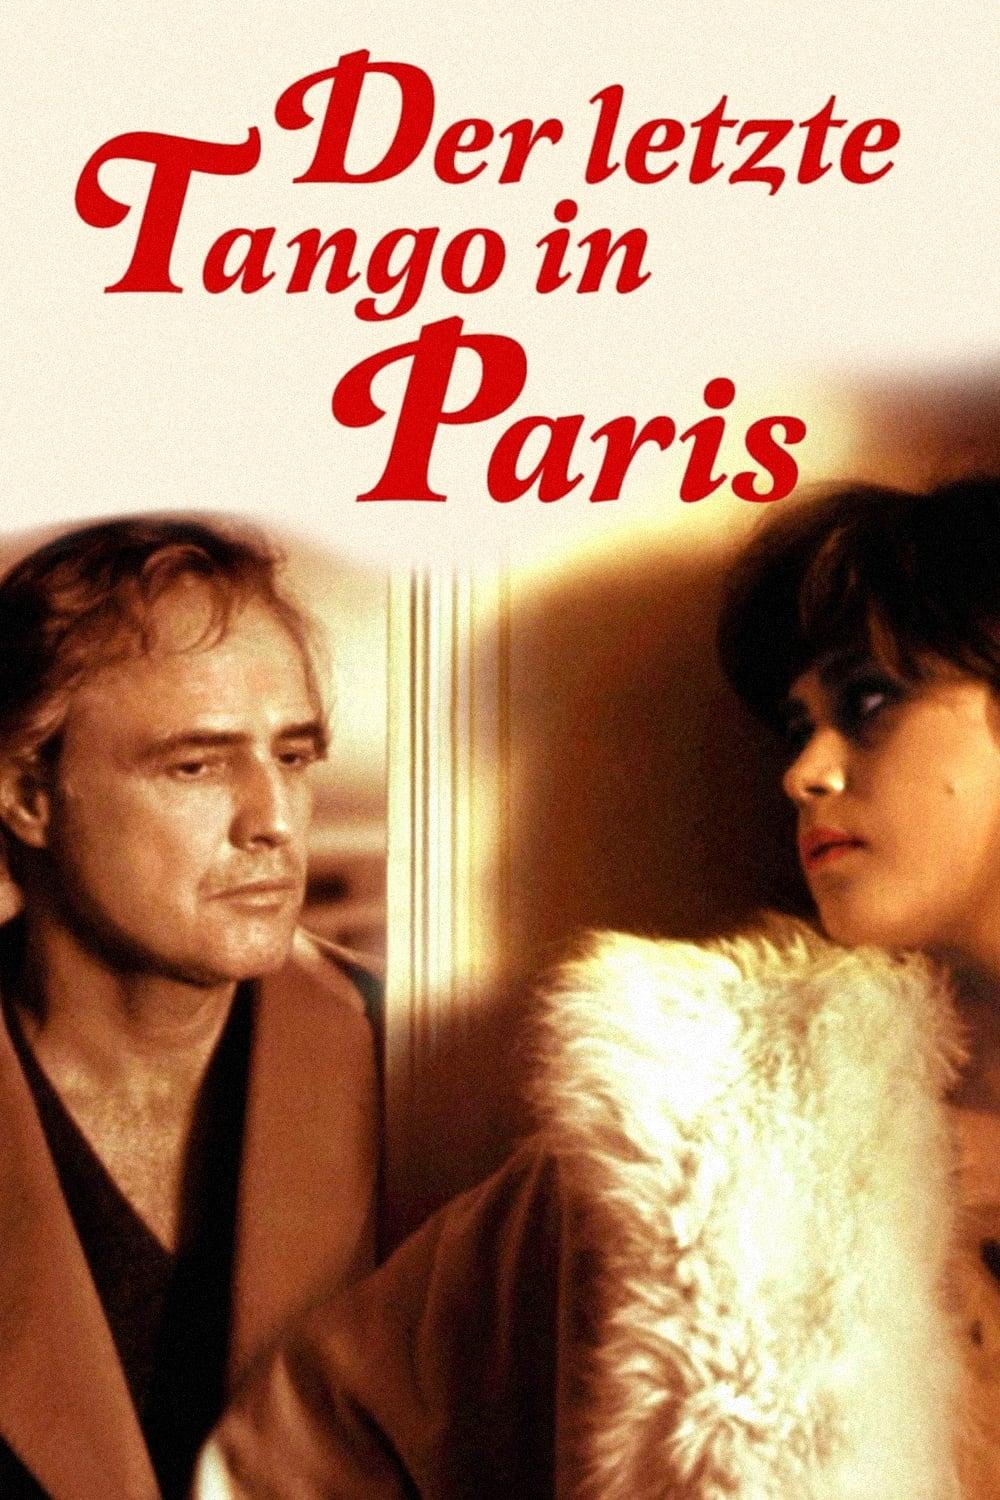 Der letzte Tango in Paris poster